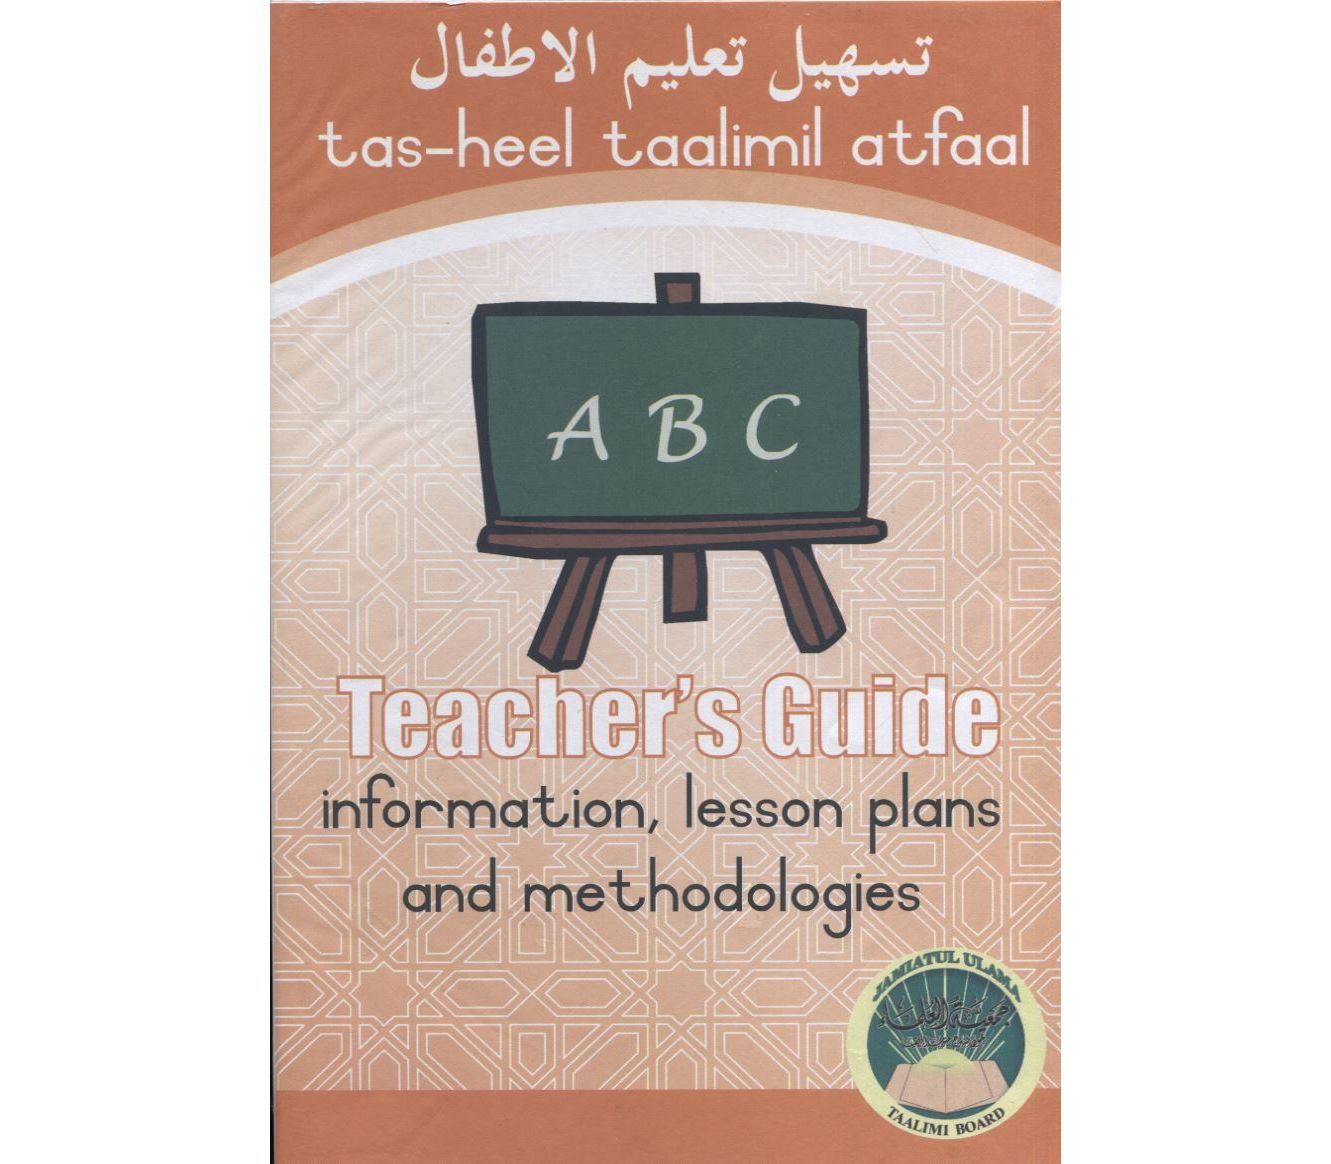 Teacher’s Guide (Atfaal)